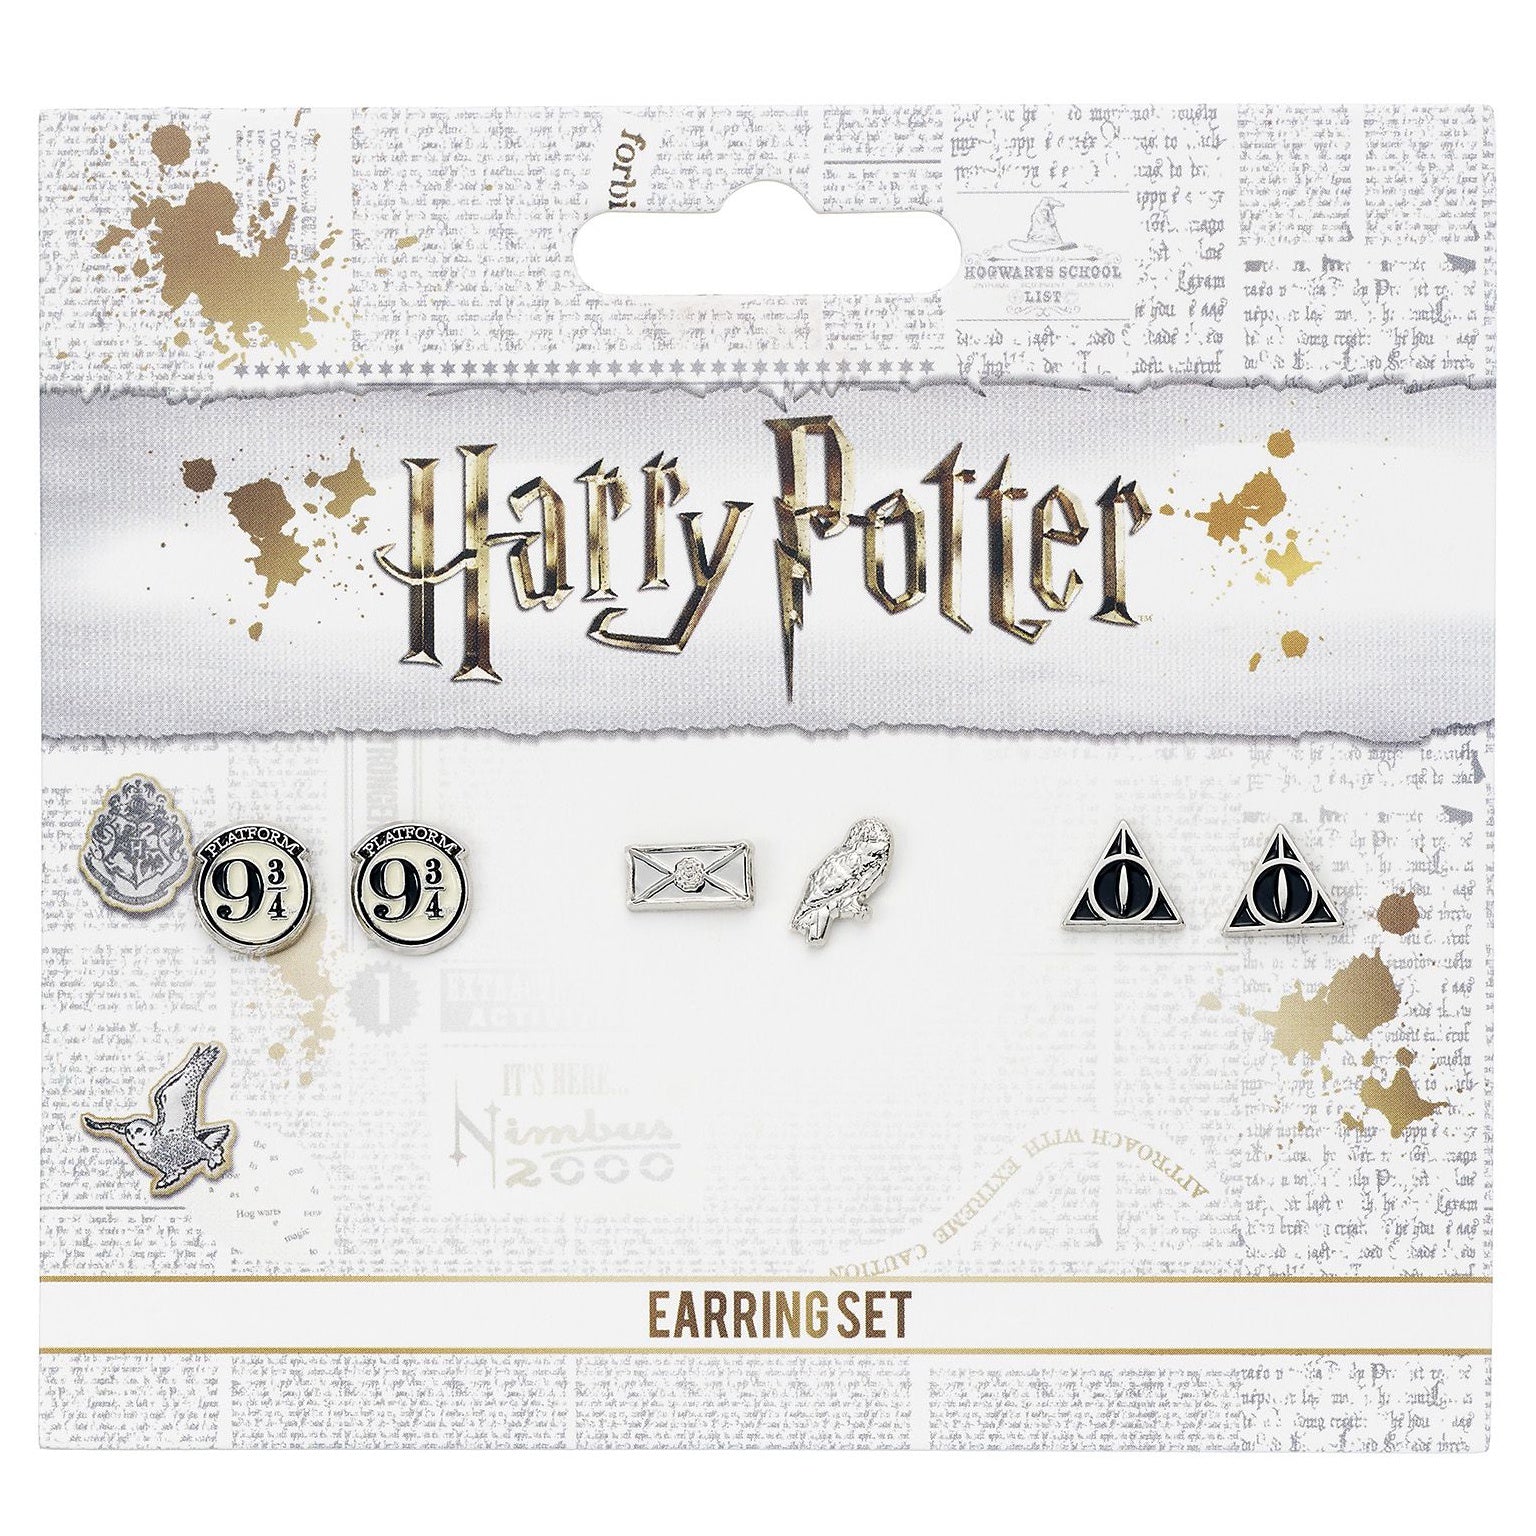 Harry Potter Earring Set - Platform 9 3/4, Deathly Hallows, Hedwig & Letter